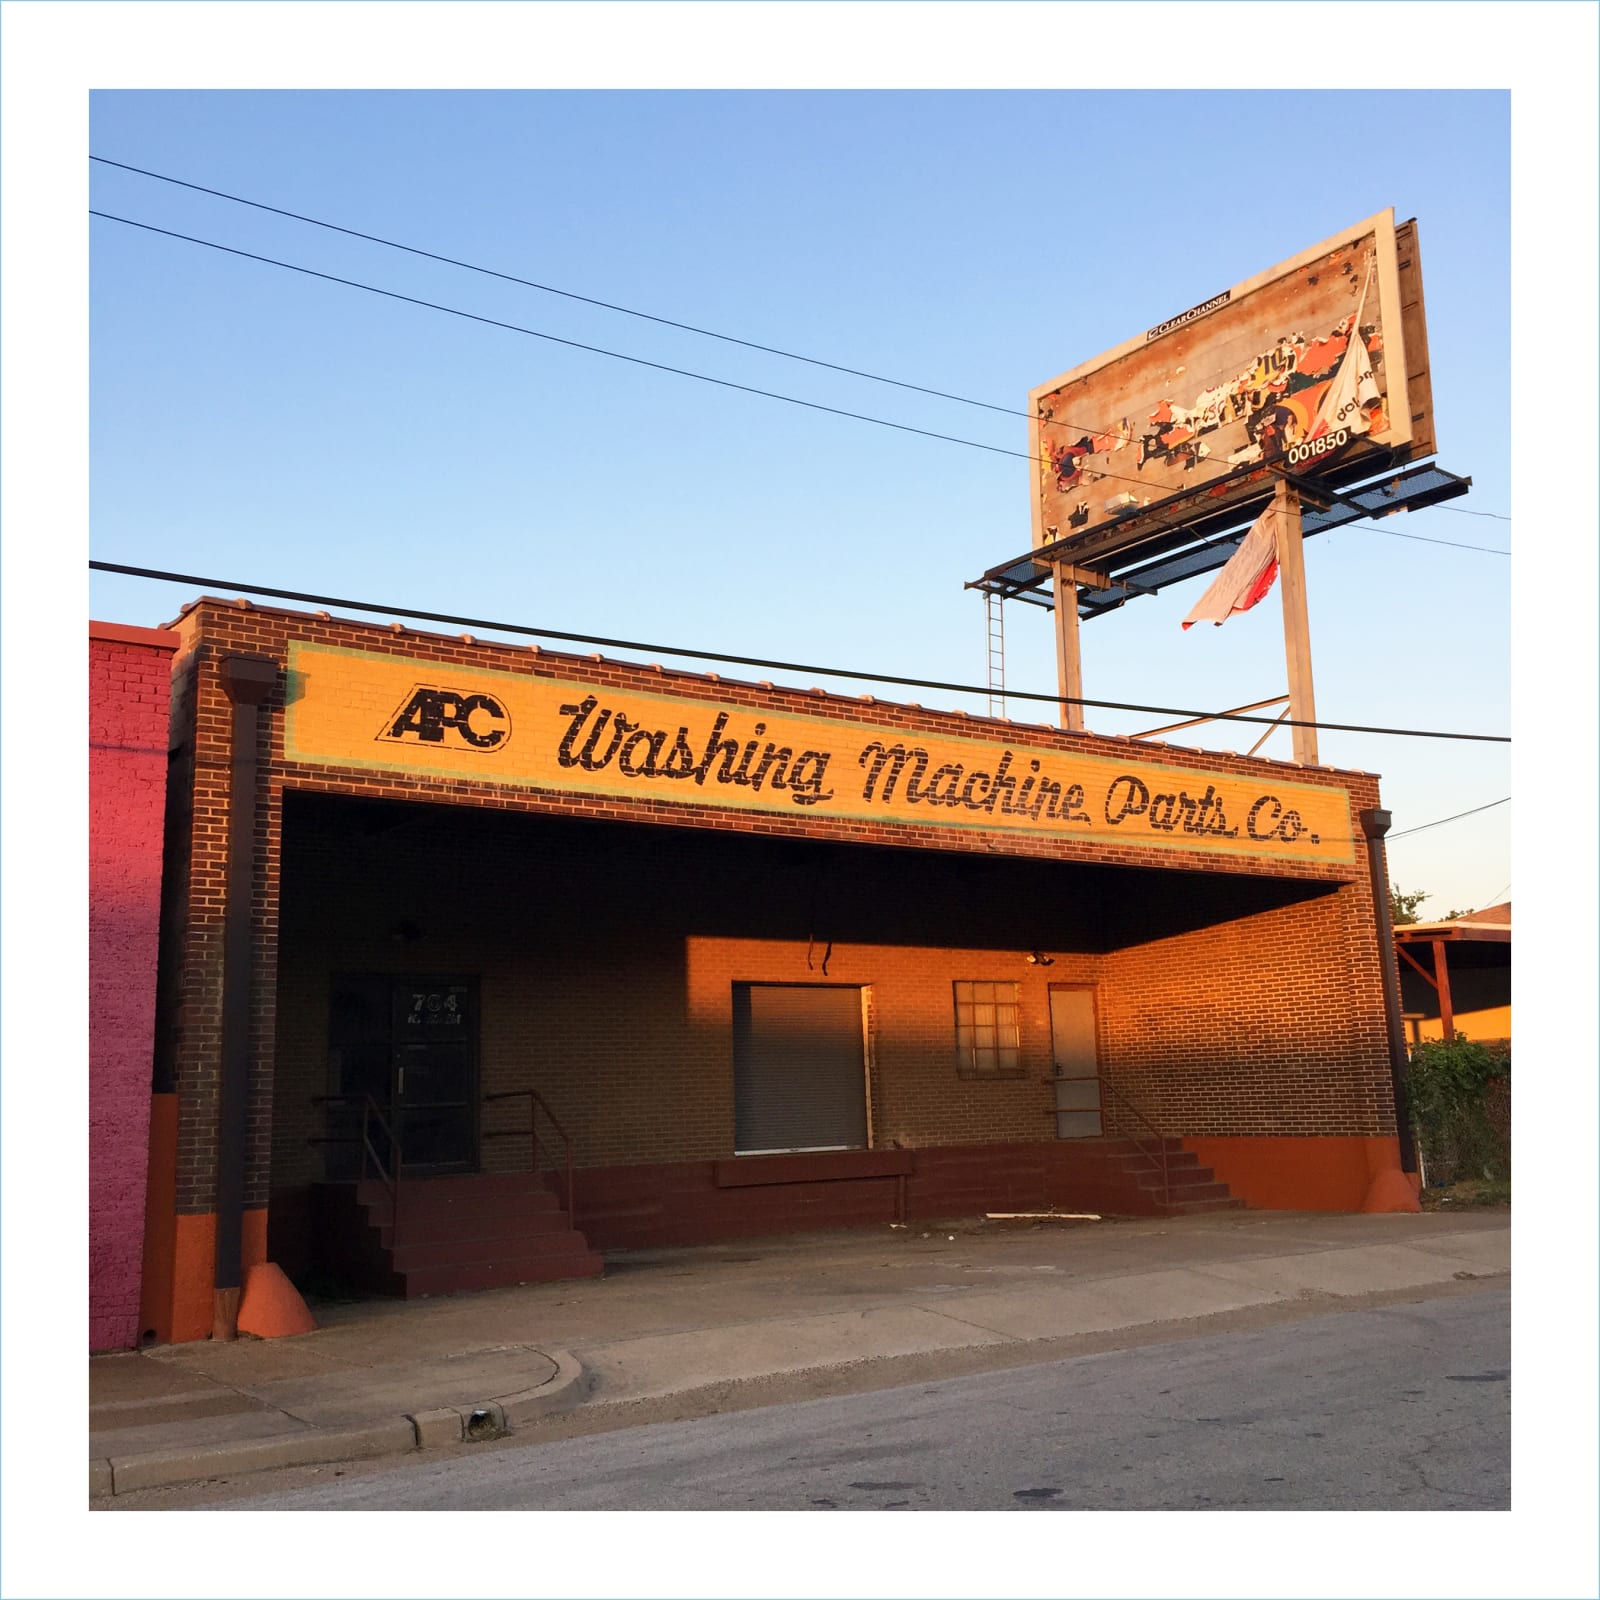 William Greiner, Washing Machine Parts, Fort Worth TX, 2018